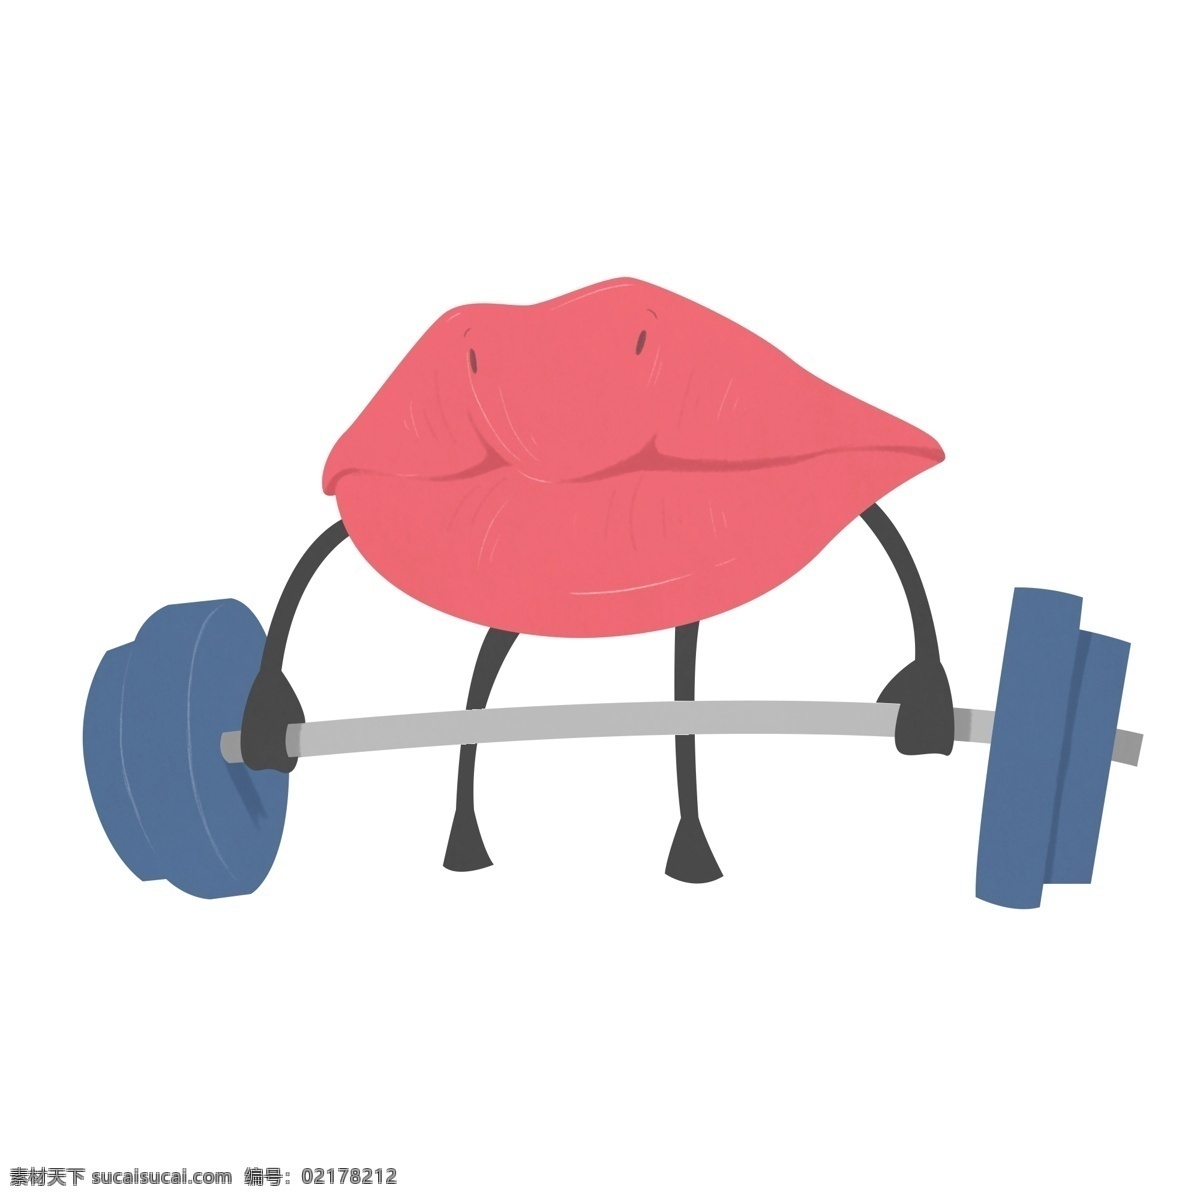 举重 嘴巴 卡通 插画 举重的嘴巴 健身 蓝色杠铃 运动的嘴唇 红色嘴唇 人体器官 人体嘴唇插画